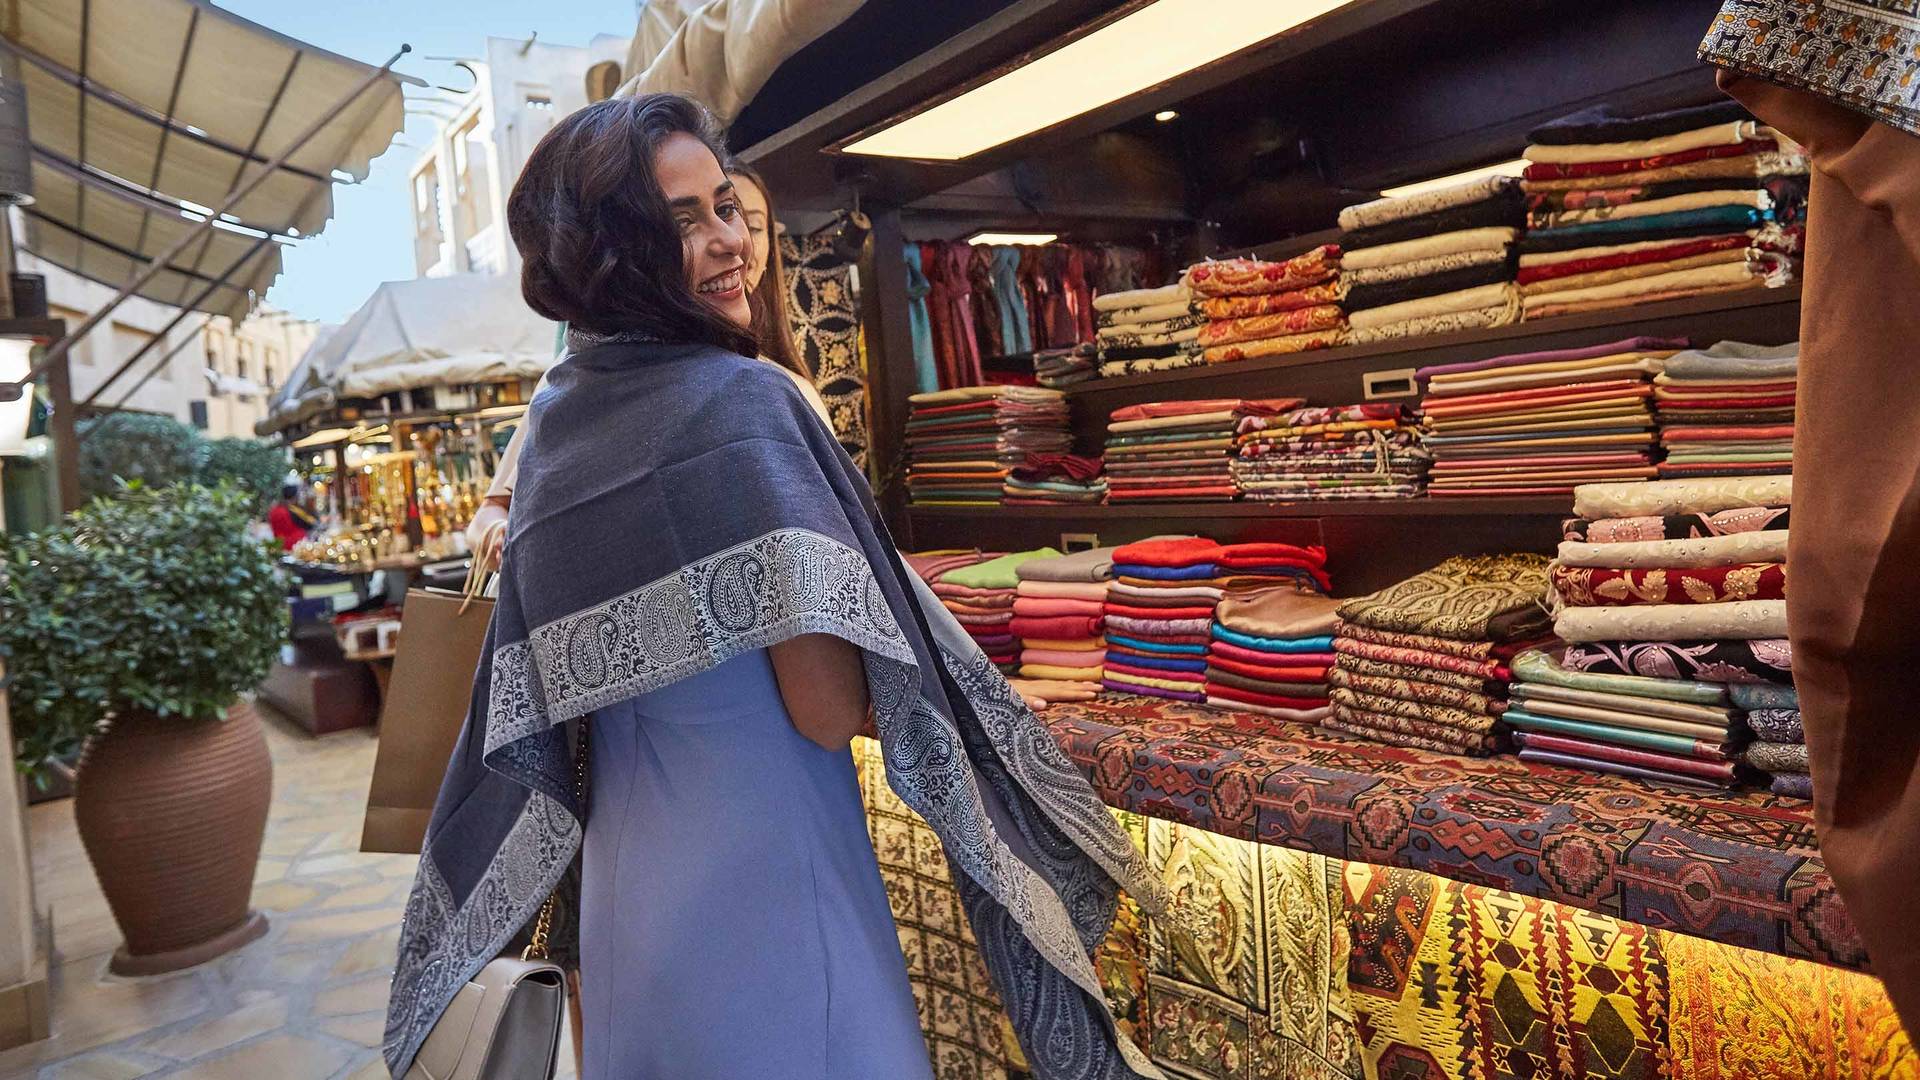 Dubai – Westliche Frau beim Einkaufen_16-9